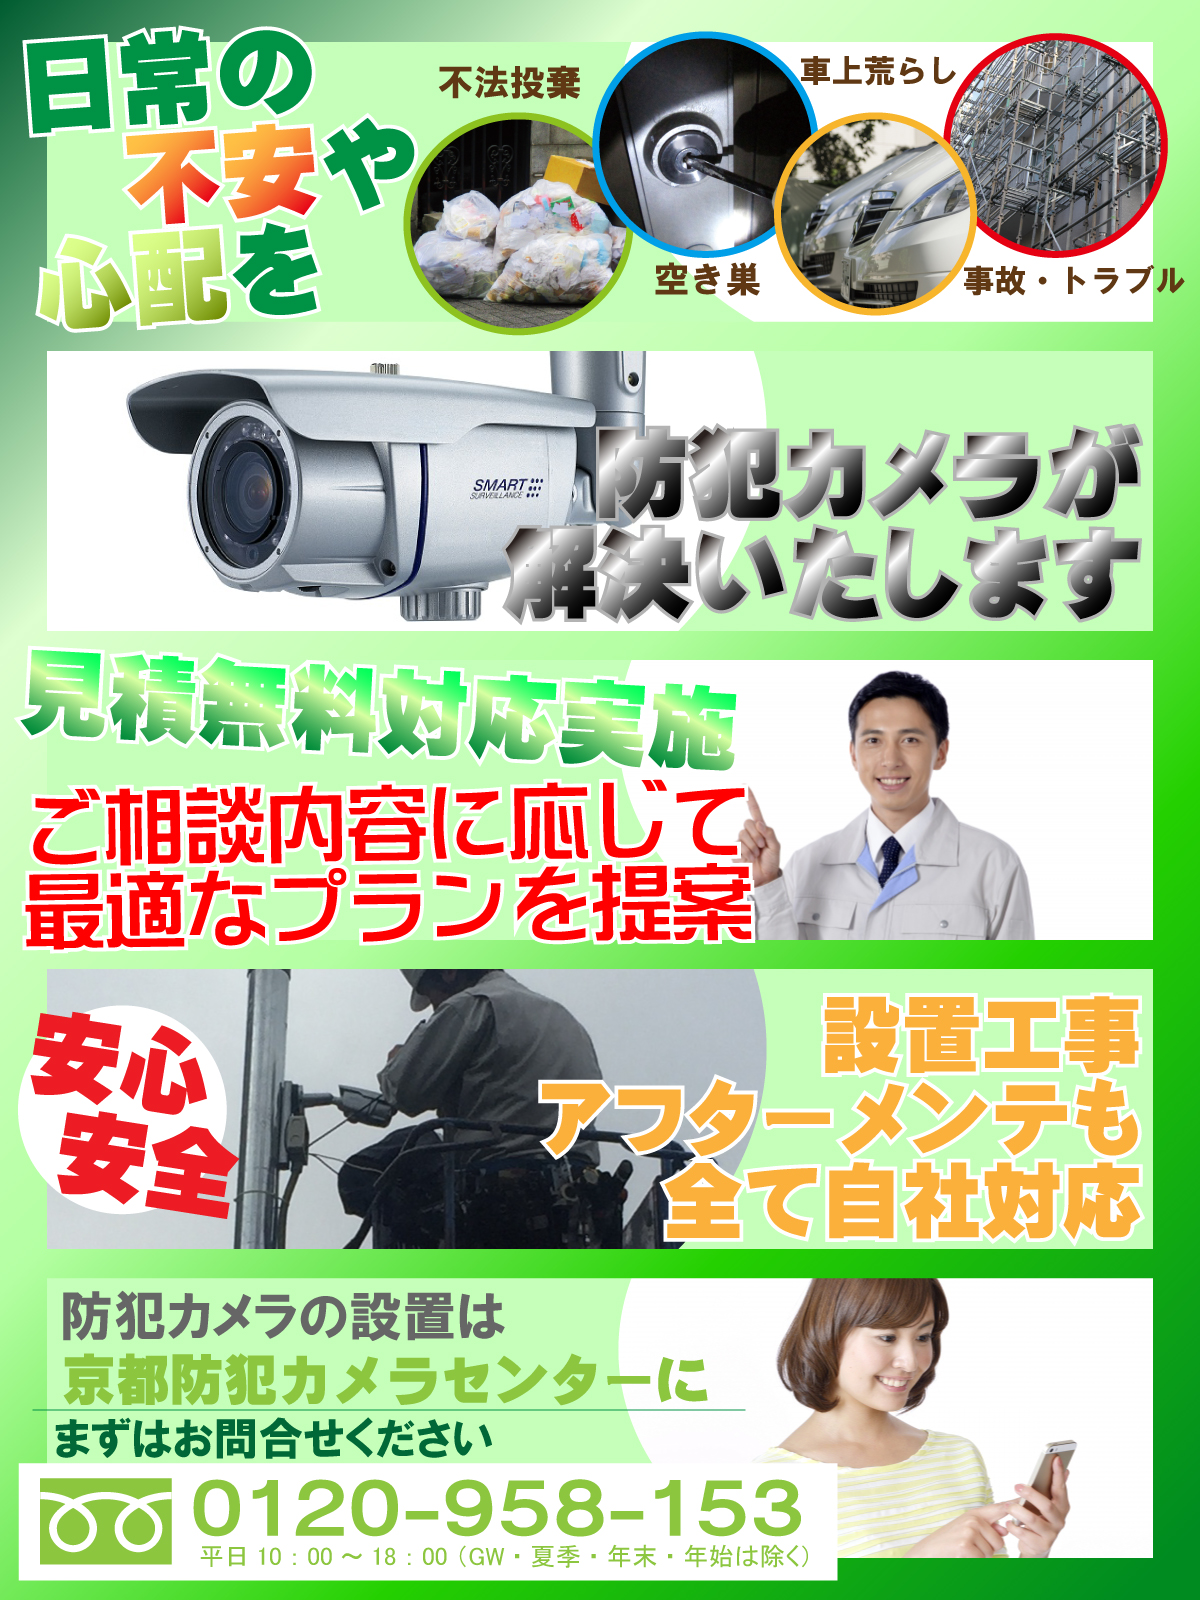 亀岡市での防犯カメラ設置について